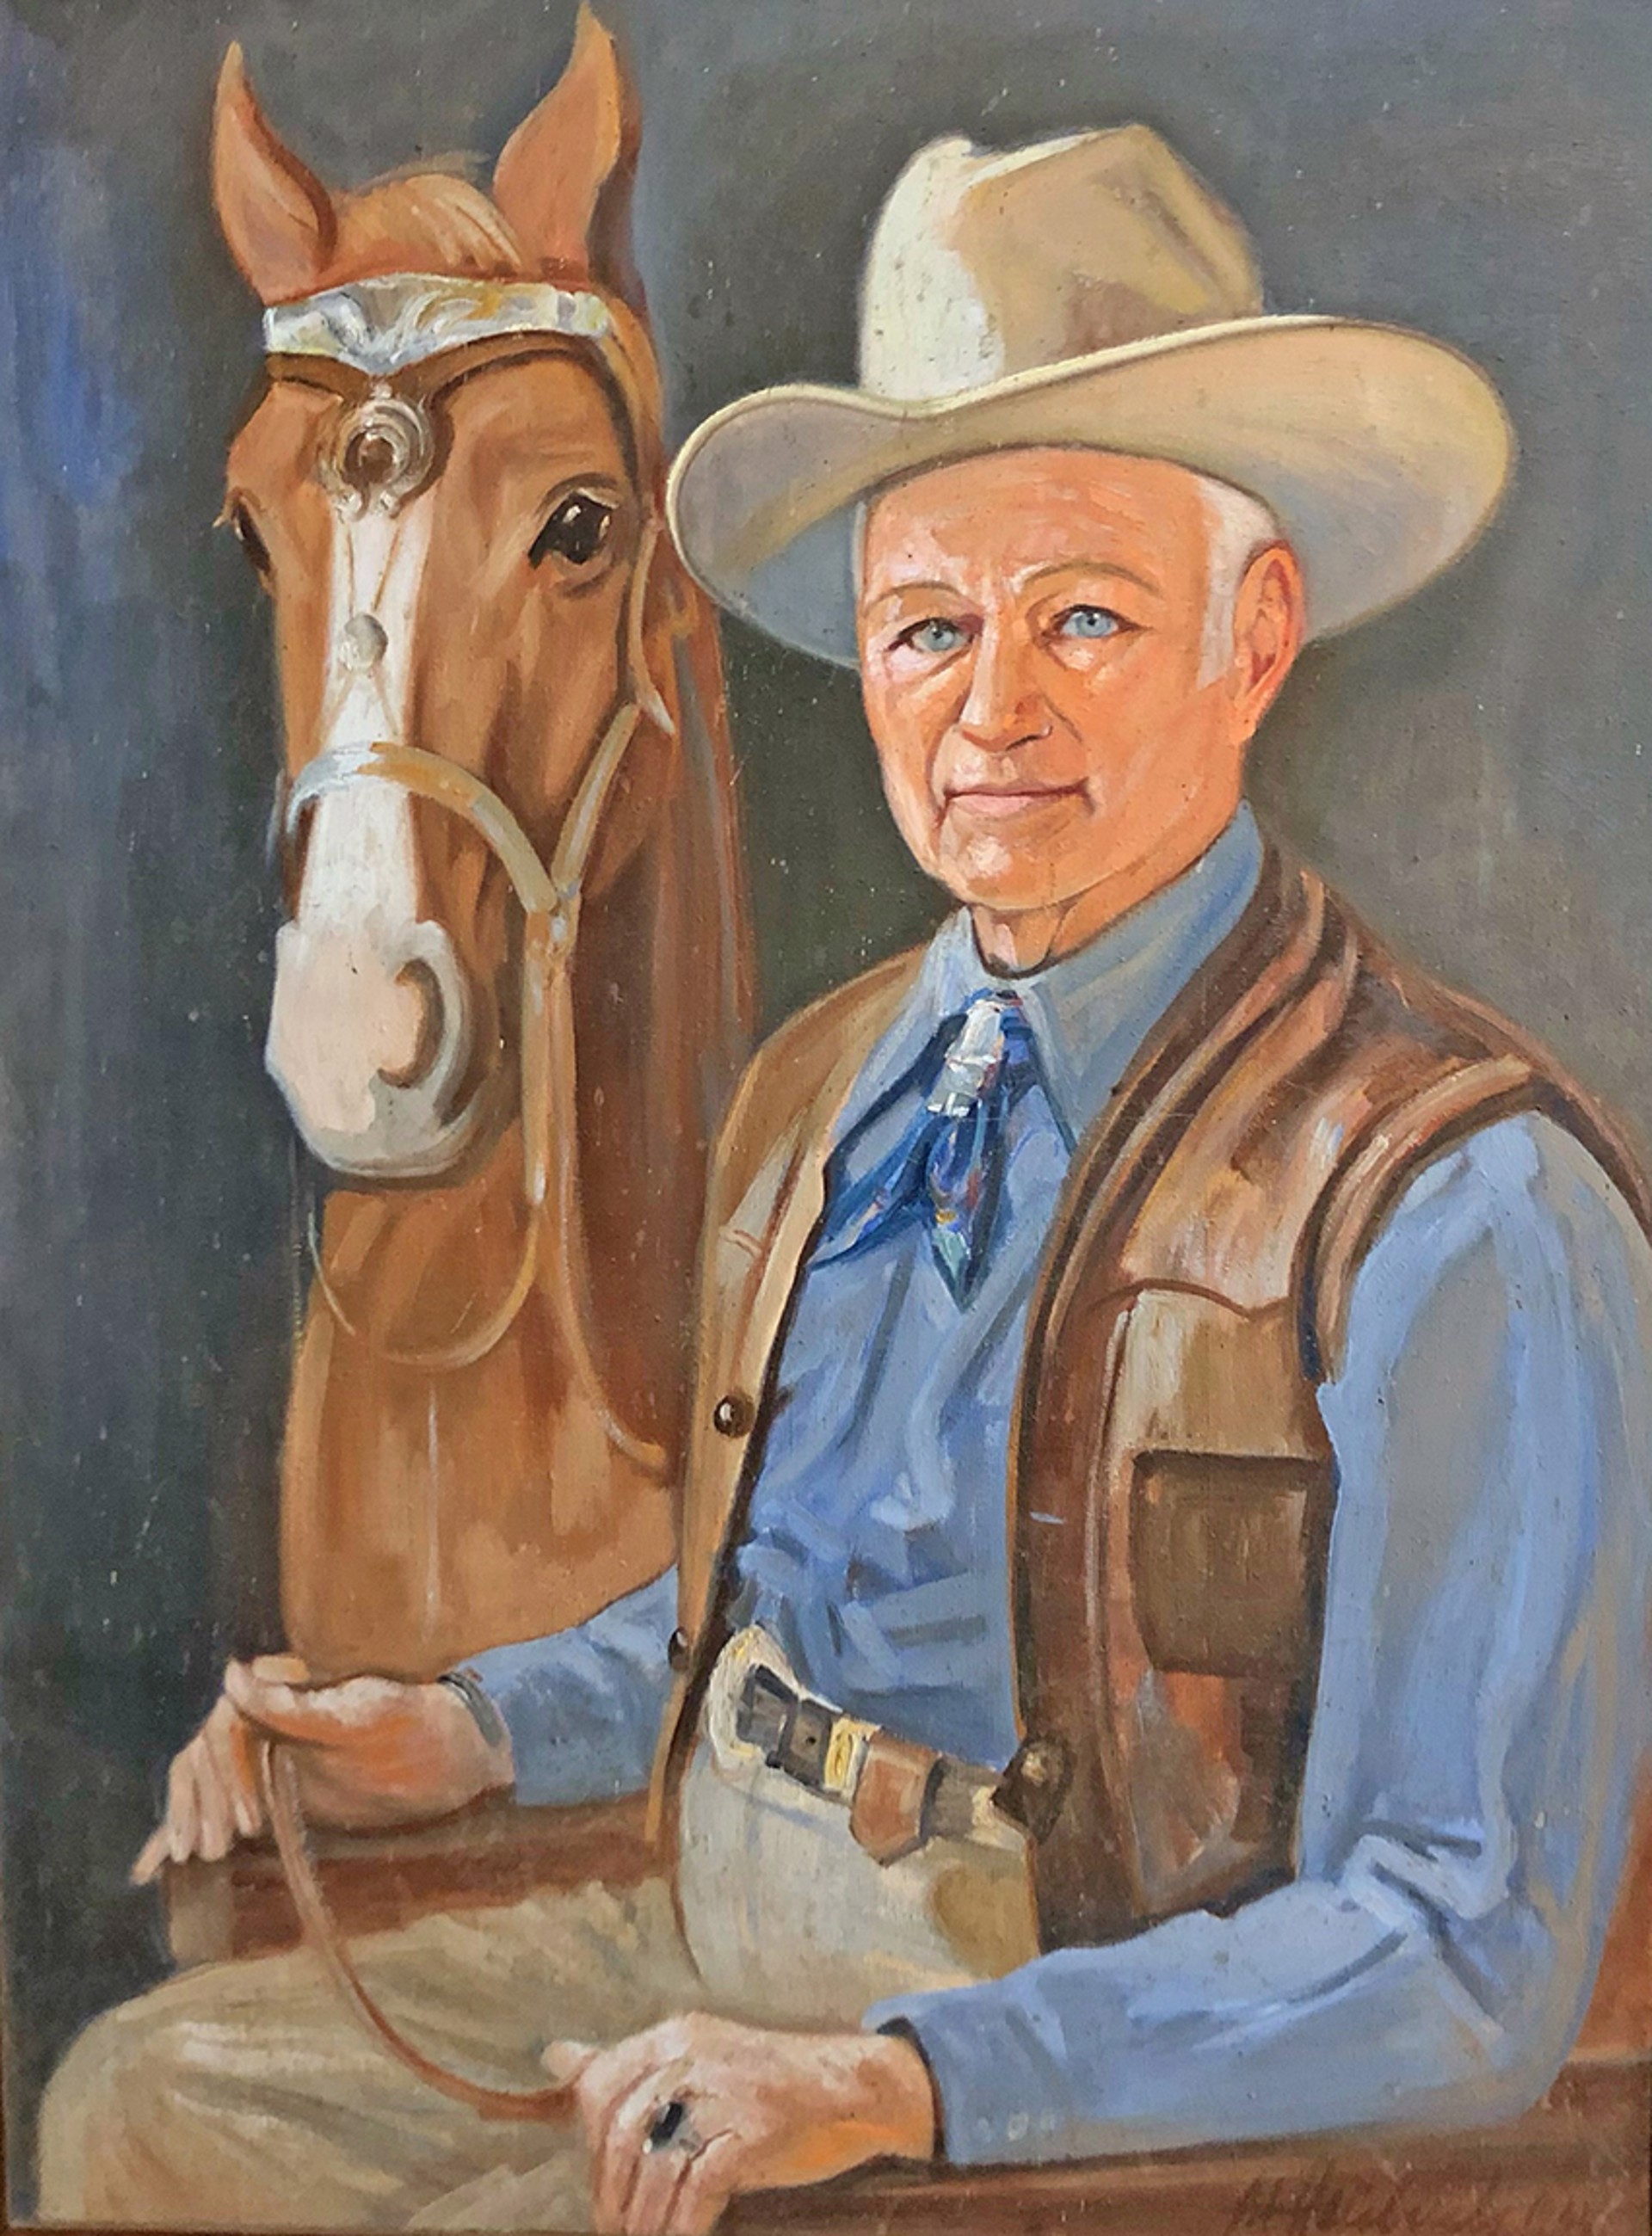 Portrait of Early Carmel Valley Rancher K.D. Mathiot w/Seriq by Alfred Leo Heubach